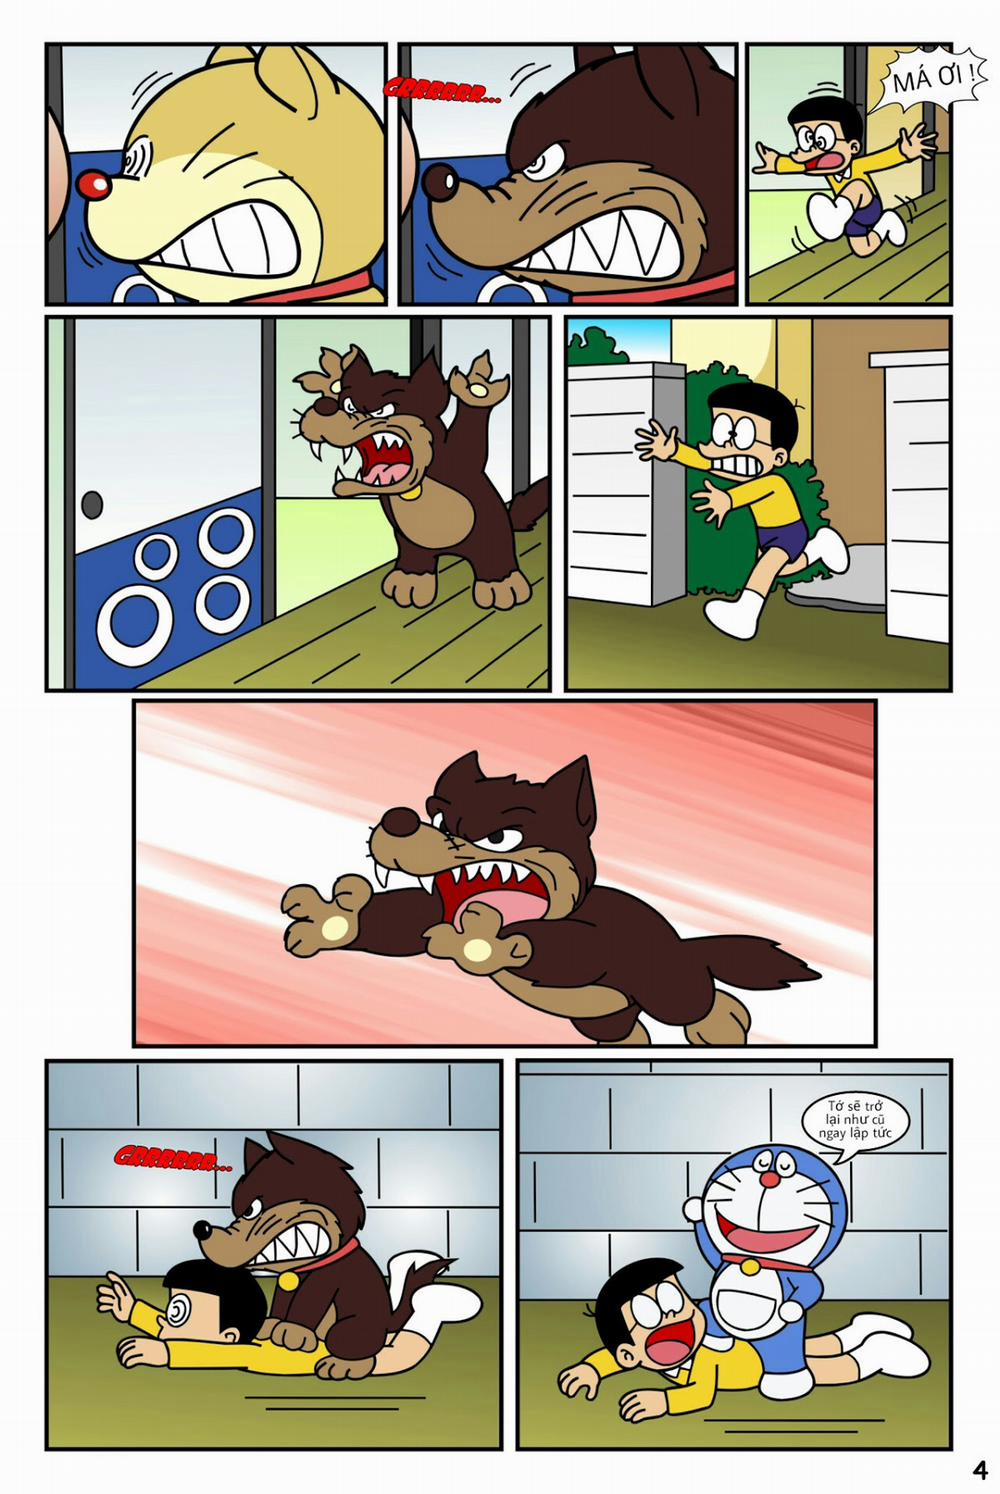 Tuyển Tập Doraemon Doujinshi 18+ Chương 19 Kem ch s i 1 Trang 6